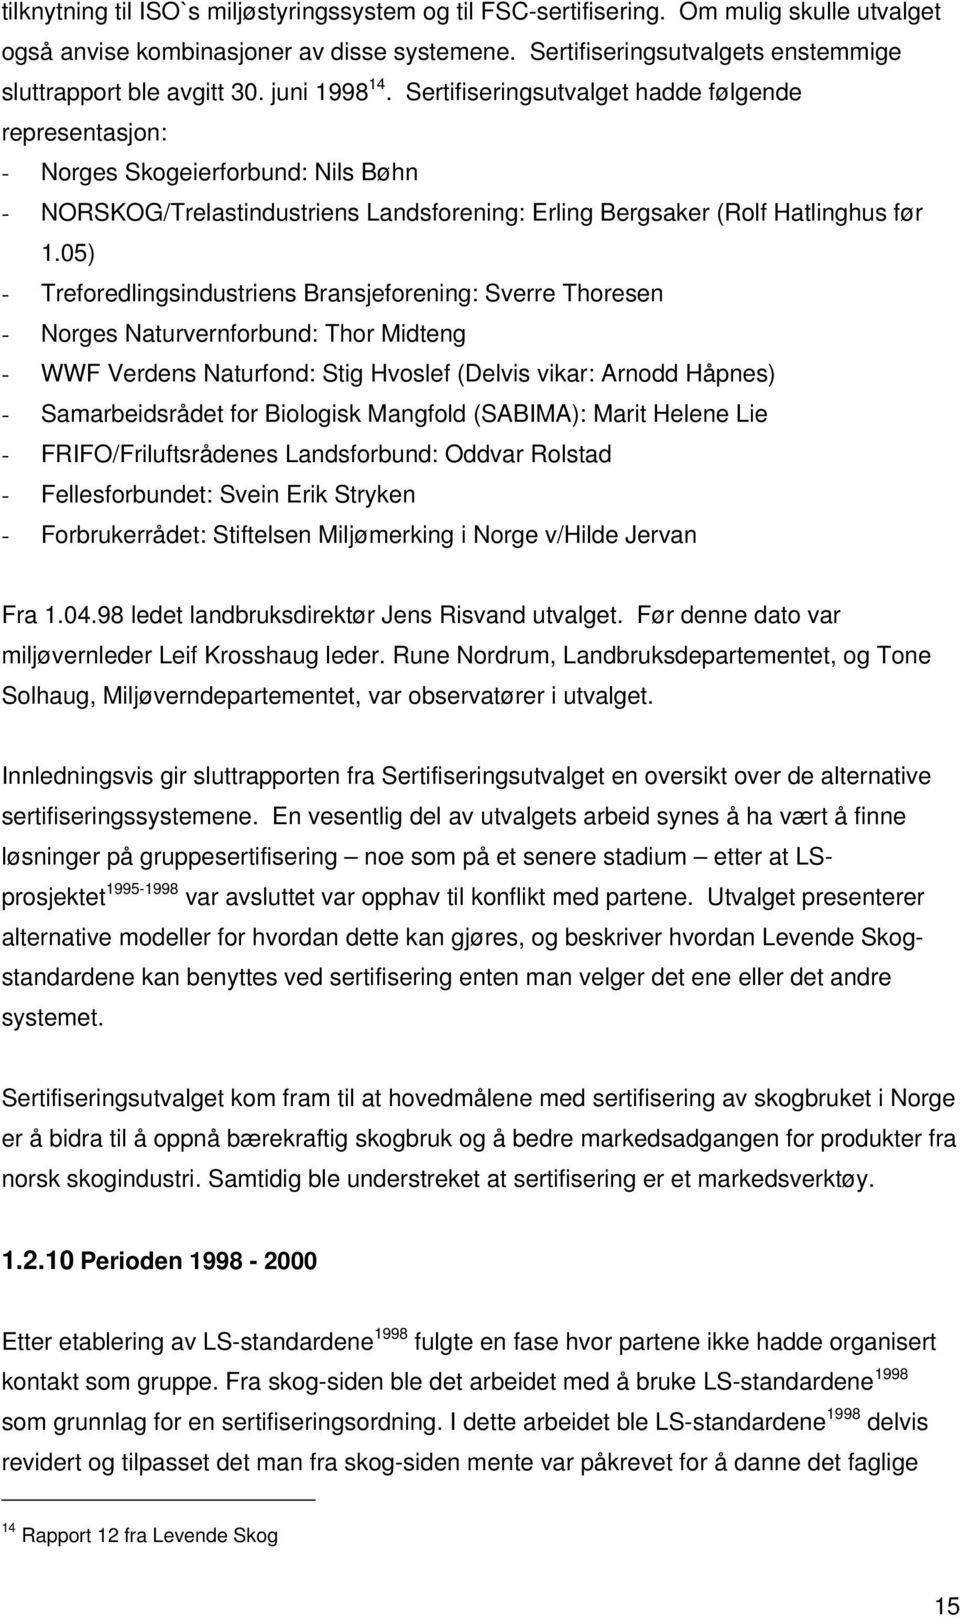 Sertifiseringsutvalget hadde følgende representasjon: - Norges Skogeierforbund: Nils Bøhn - NORSKOG/Trelastindustriens Landsforening: Erling Bergsaker (Rolf Hatlinghus før 1.